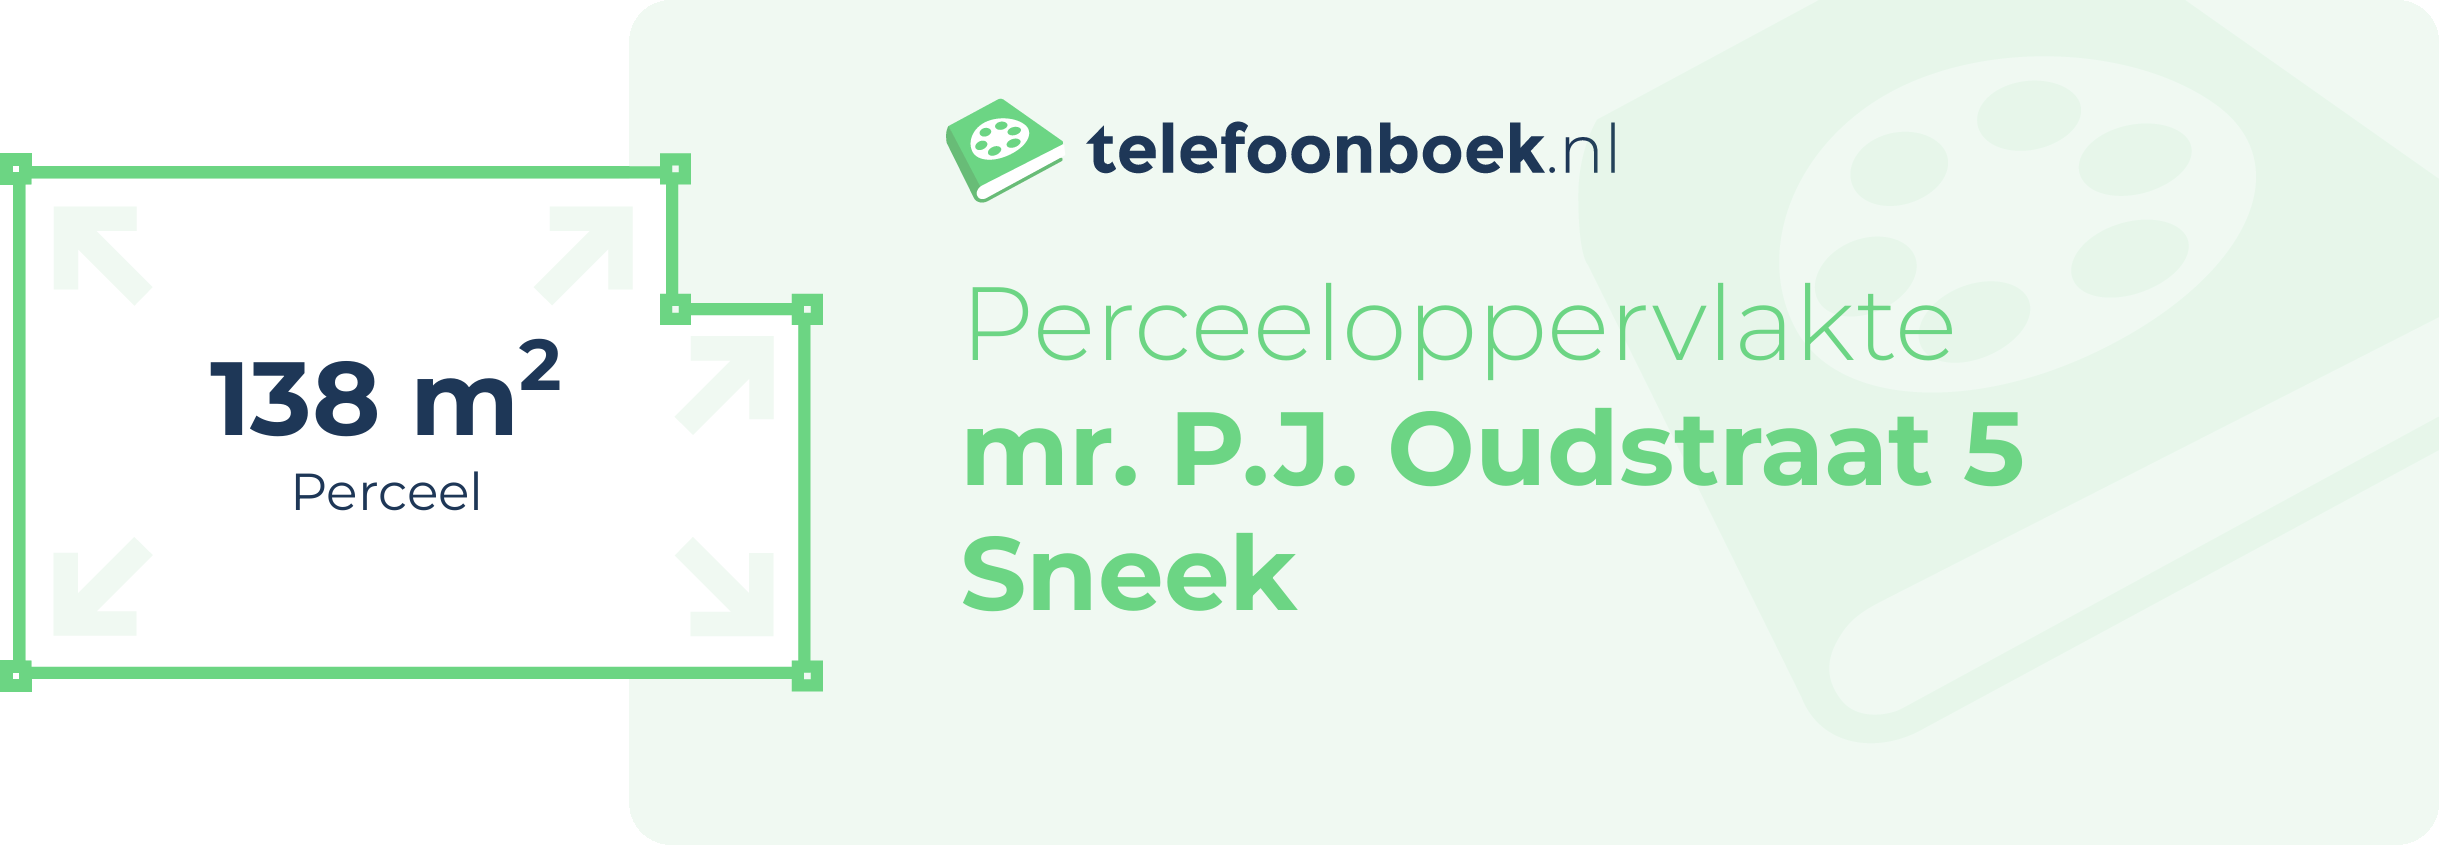 Perceeloppervlakte Mr. P.J. Oudstraat 5 Sneek